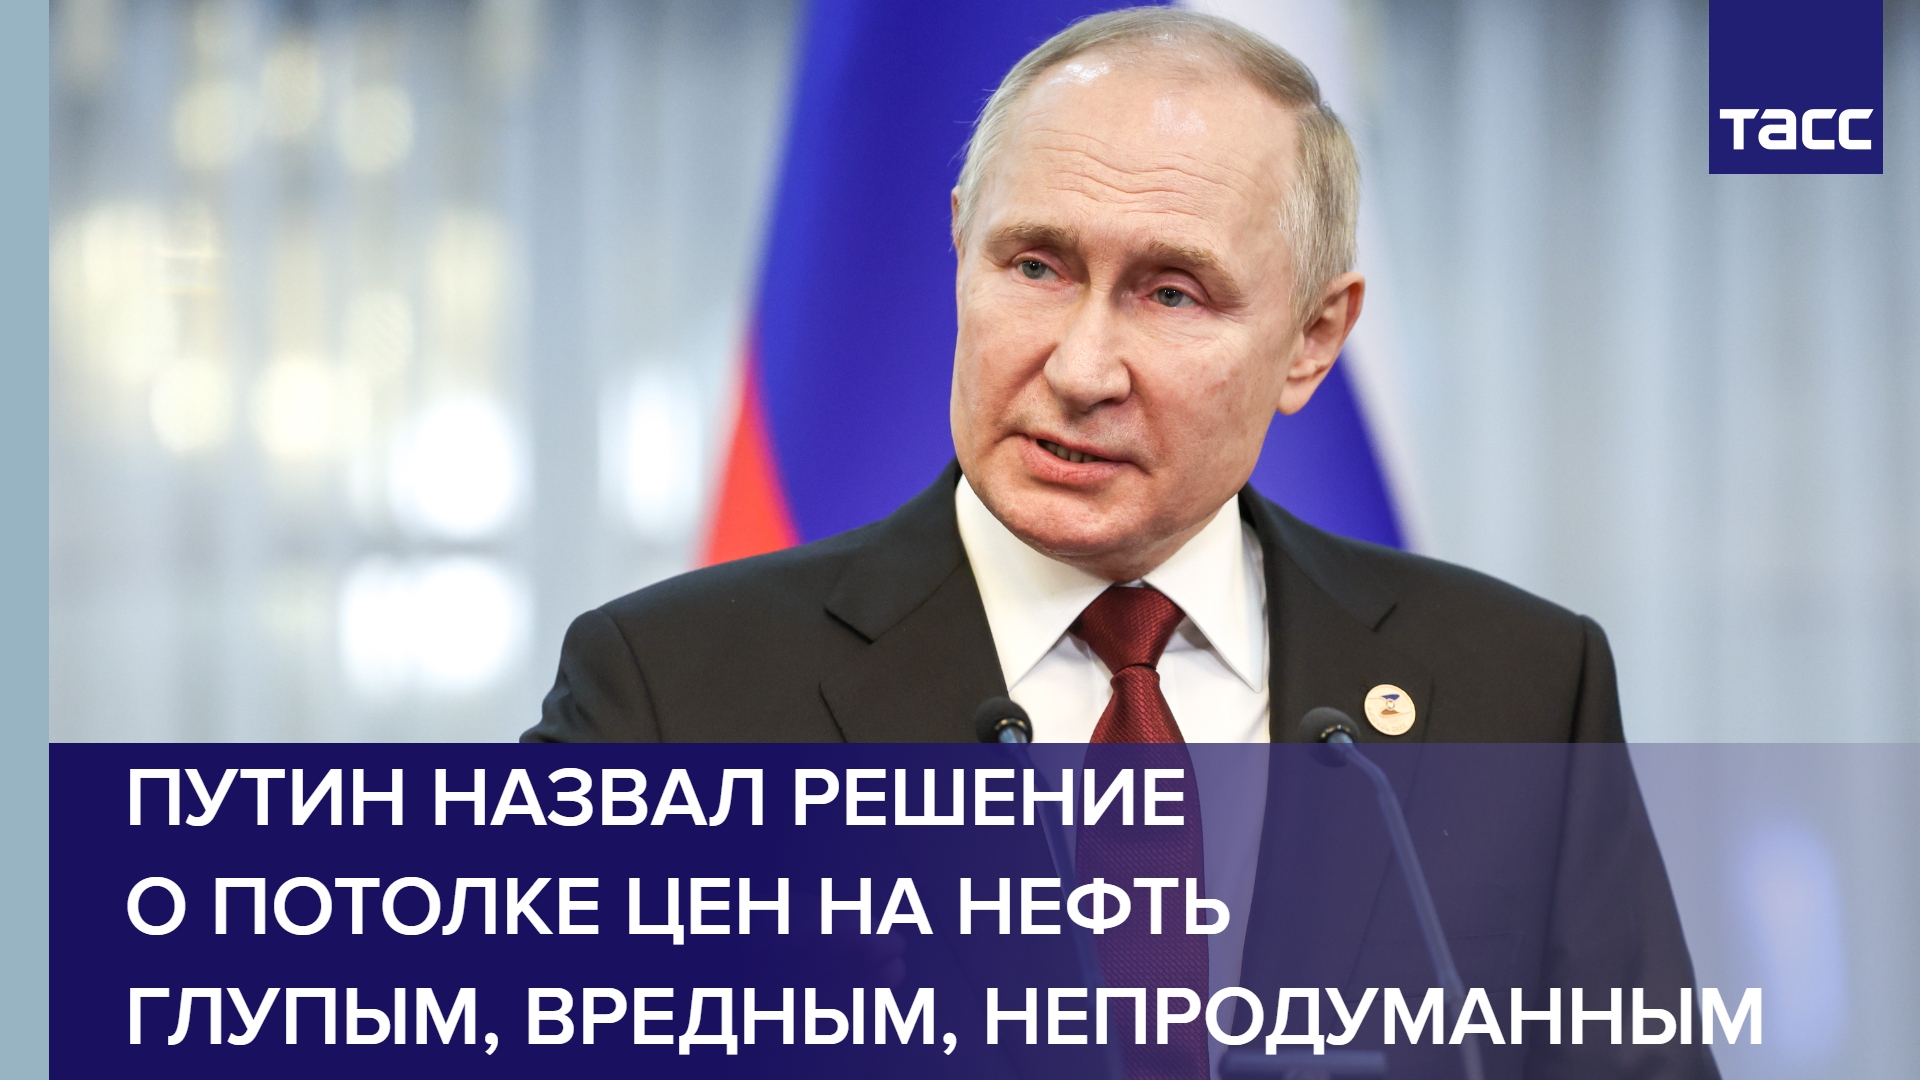 Путин назвал решение о потолке цен на нефть глупым, вредным, непродуманным